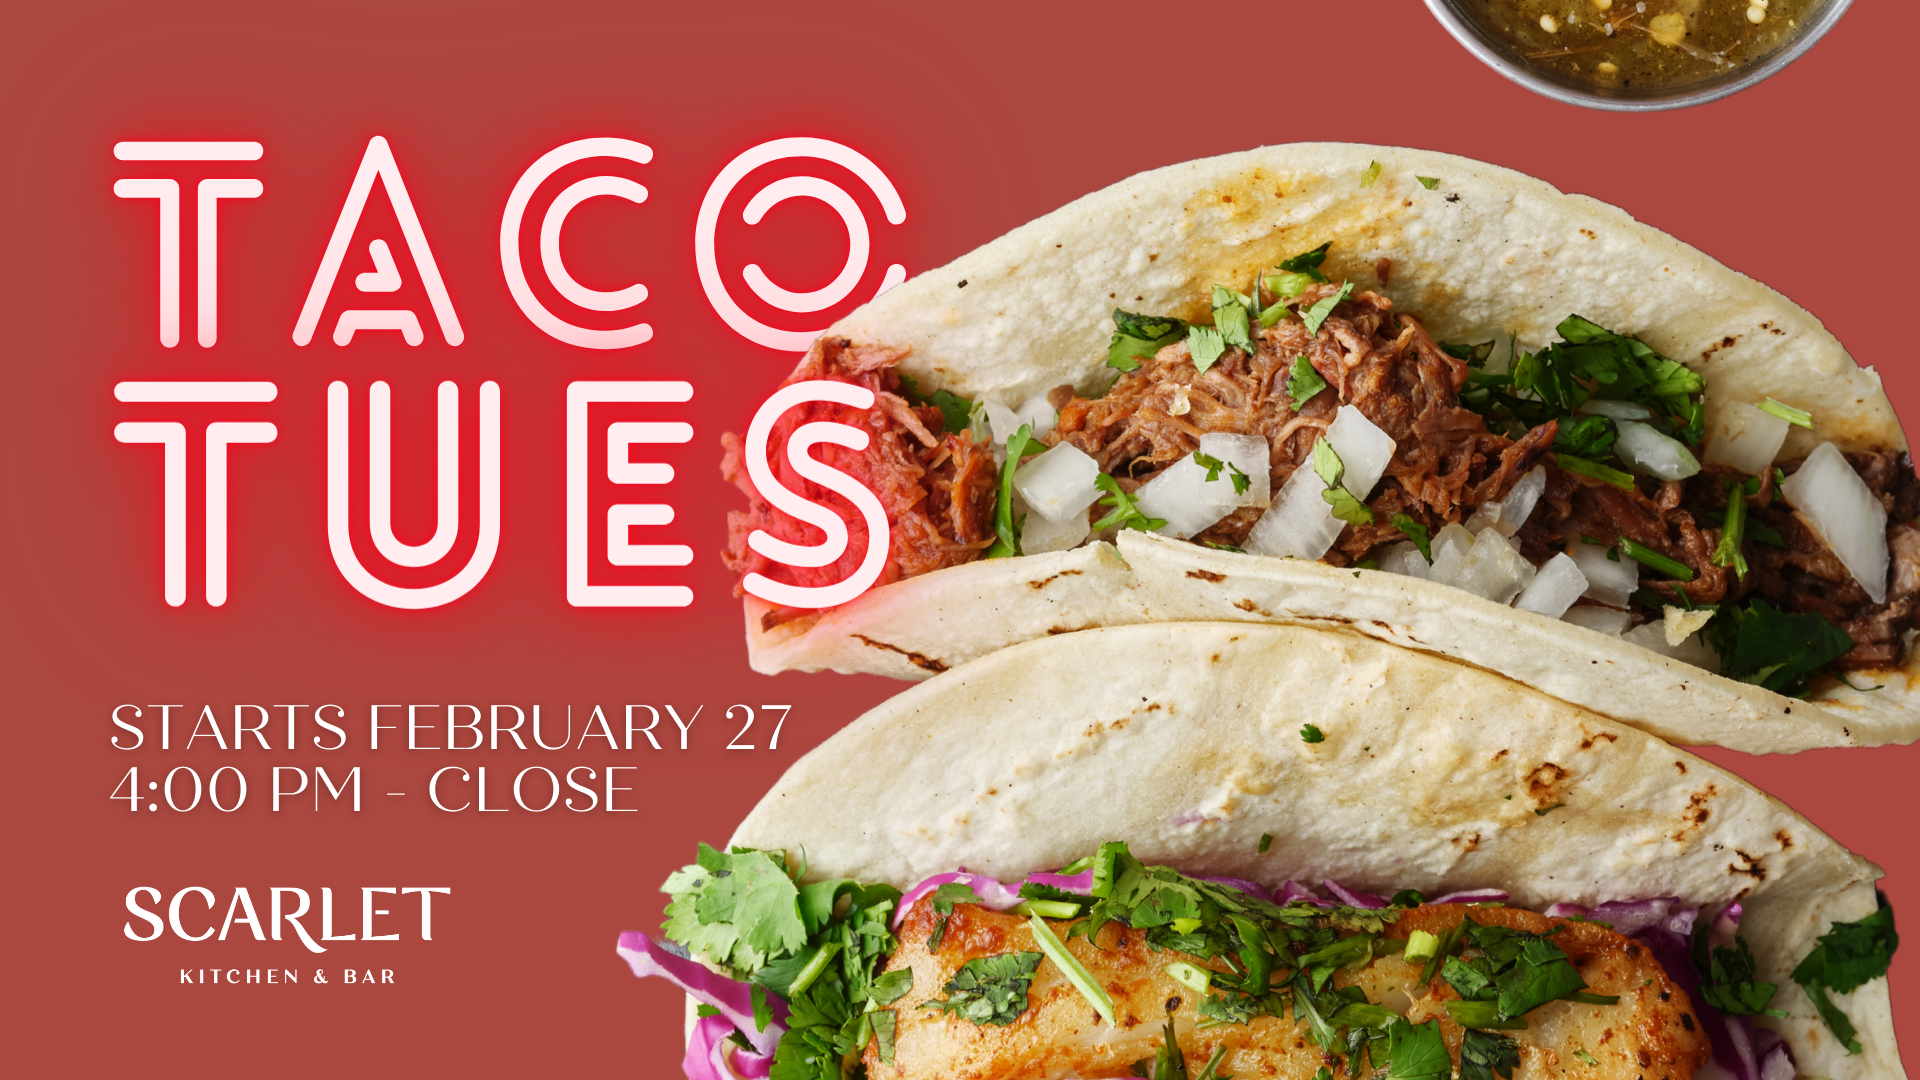 Taco Tuesday at Scarlet Kitchen & Bar